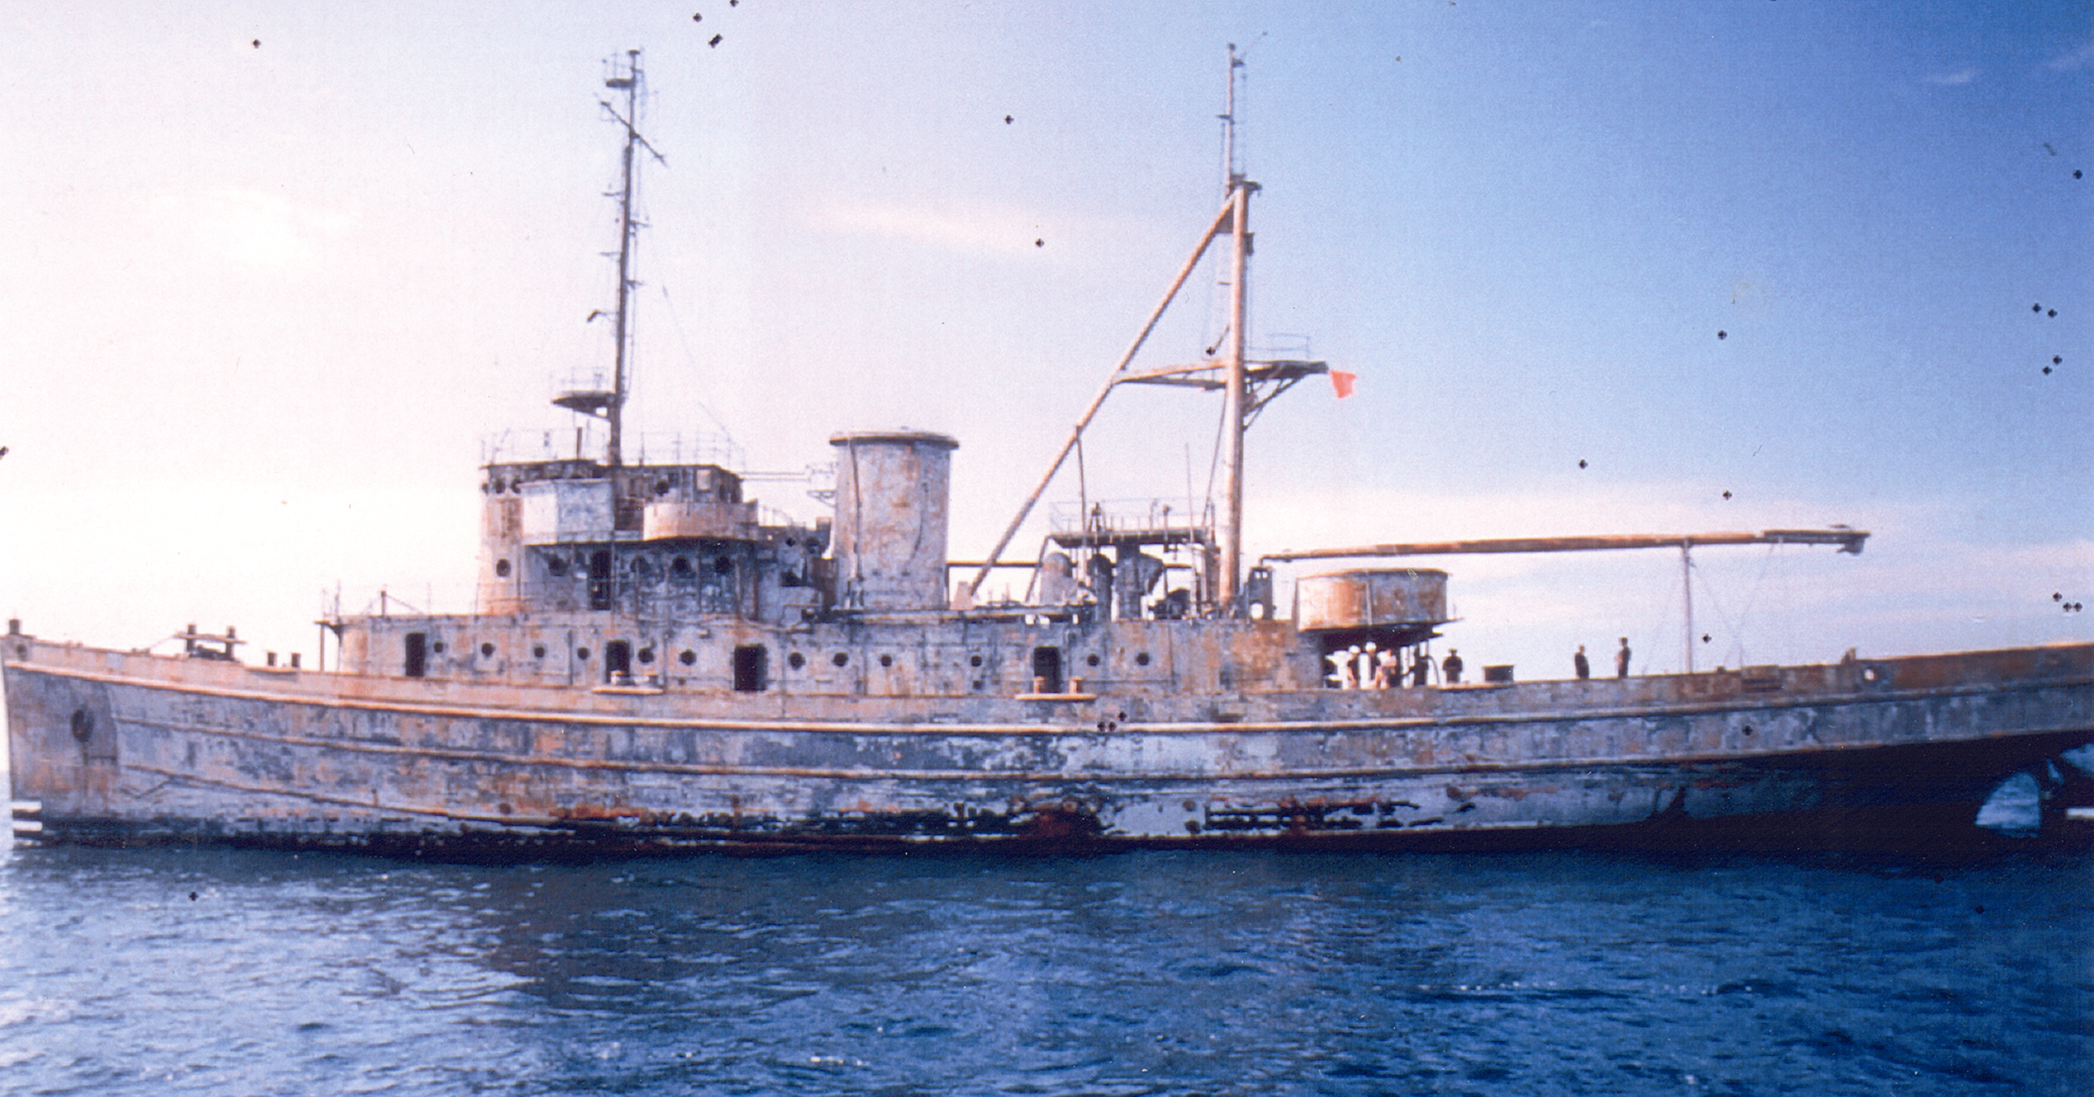 The USS Chippewa